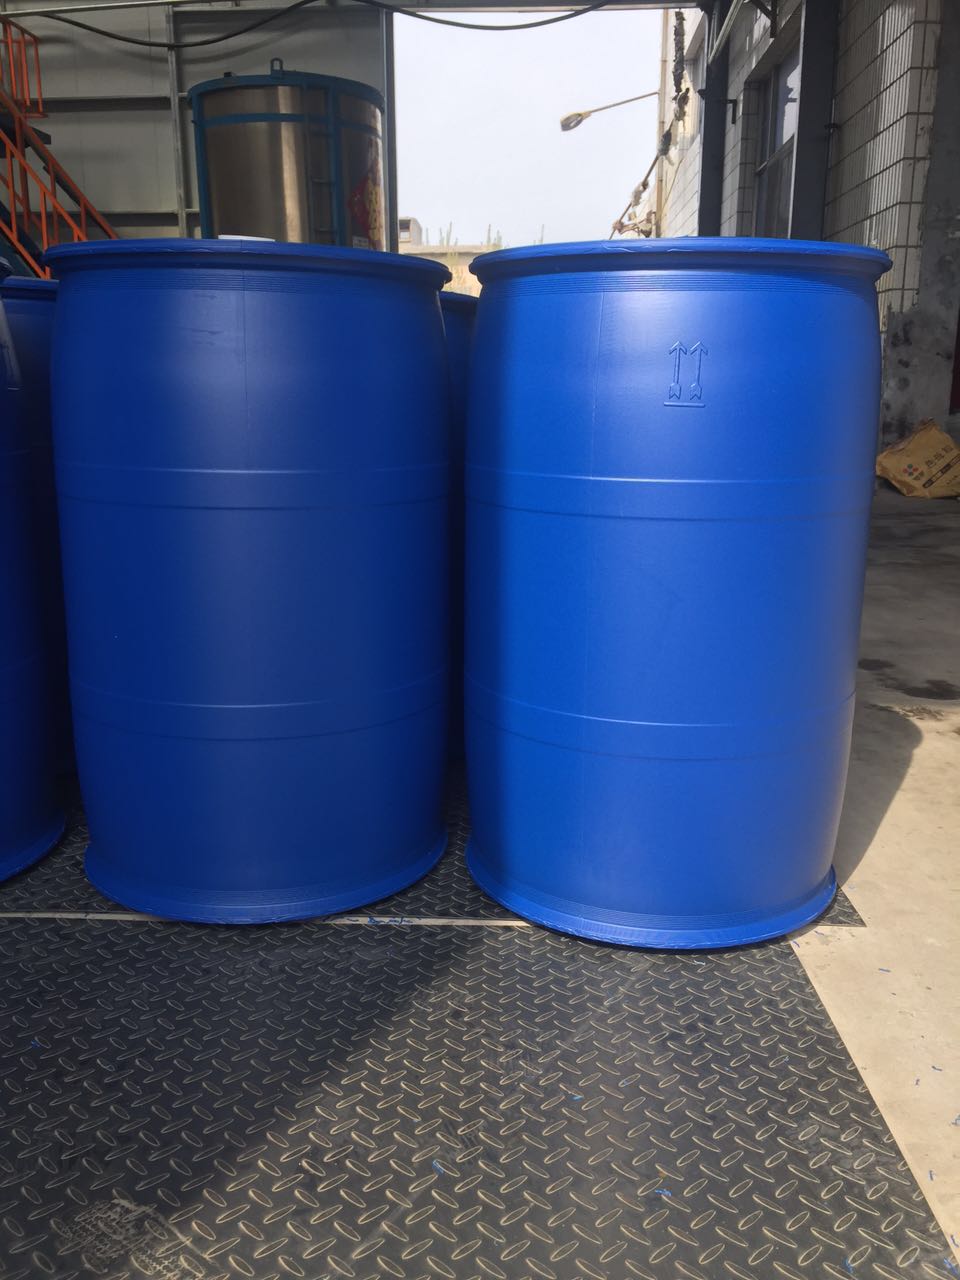 大厂回族自治县200l食品桶200l塑料桶皮重9公斤厂家发货物流包装桶